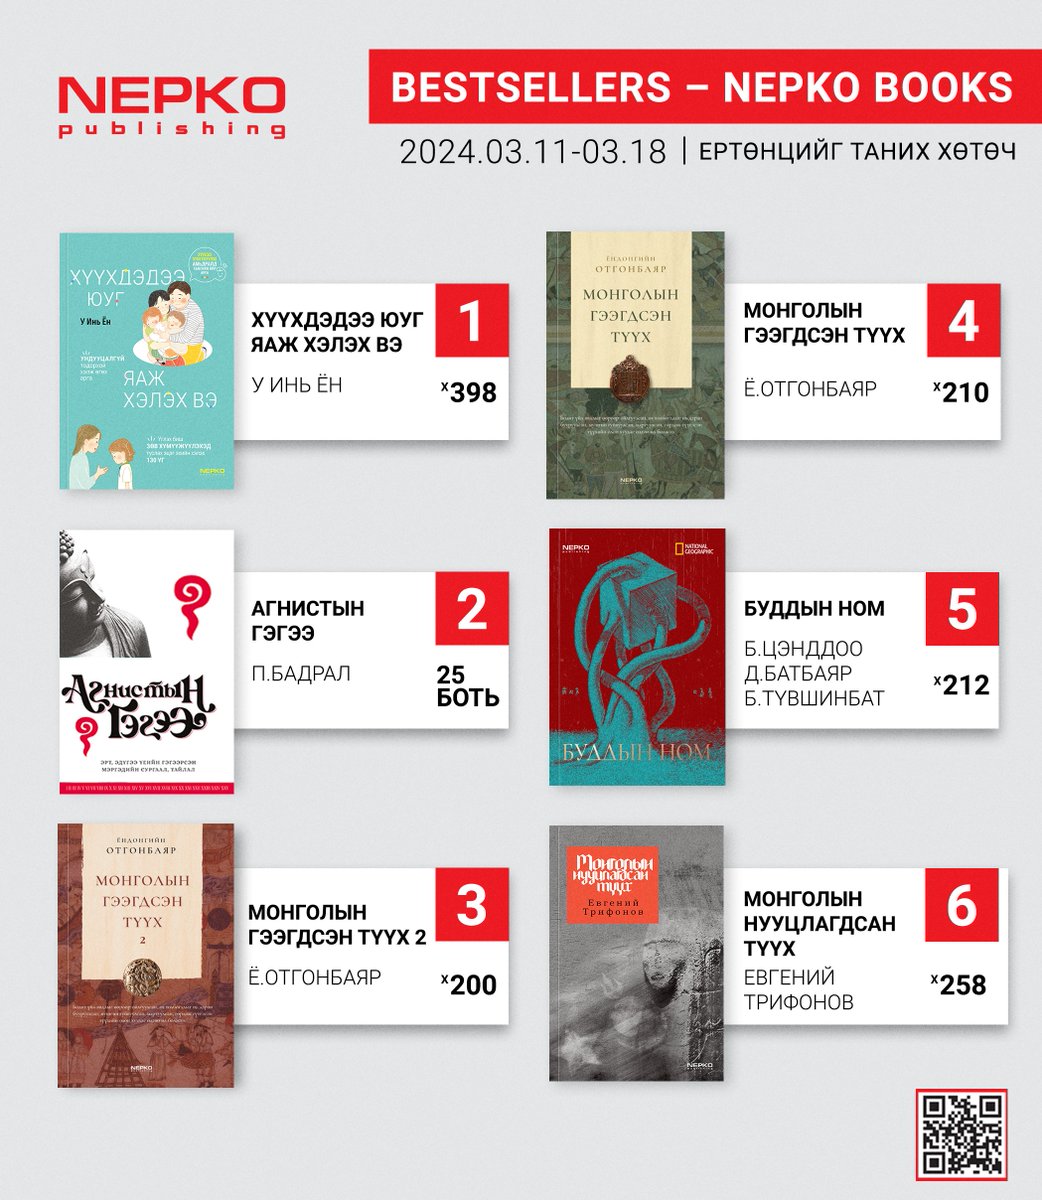 #bestsellerbooks 2024.03.11-03.18-ны хооронд Нэпко нэрийн дэлгүүр болон nepko.mn сайтыг захиалга, борлуулалтаараа тэргүүлсэн 6 номыг танилцуулж байна. Онлайн захиалга: nepko.mn Захиалах утас: 7533-9933 #nepko_books